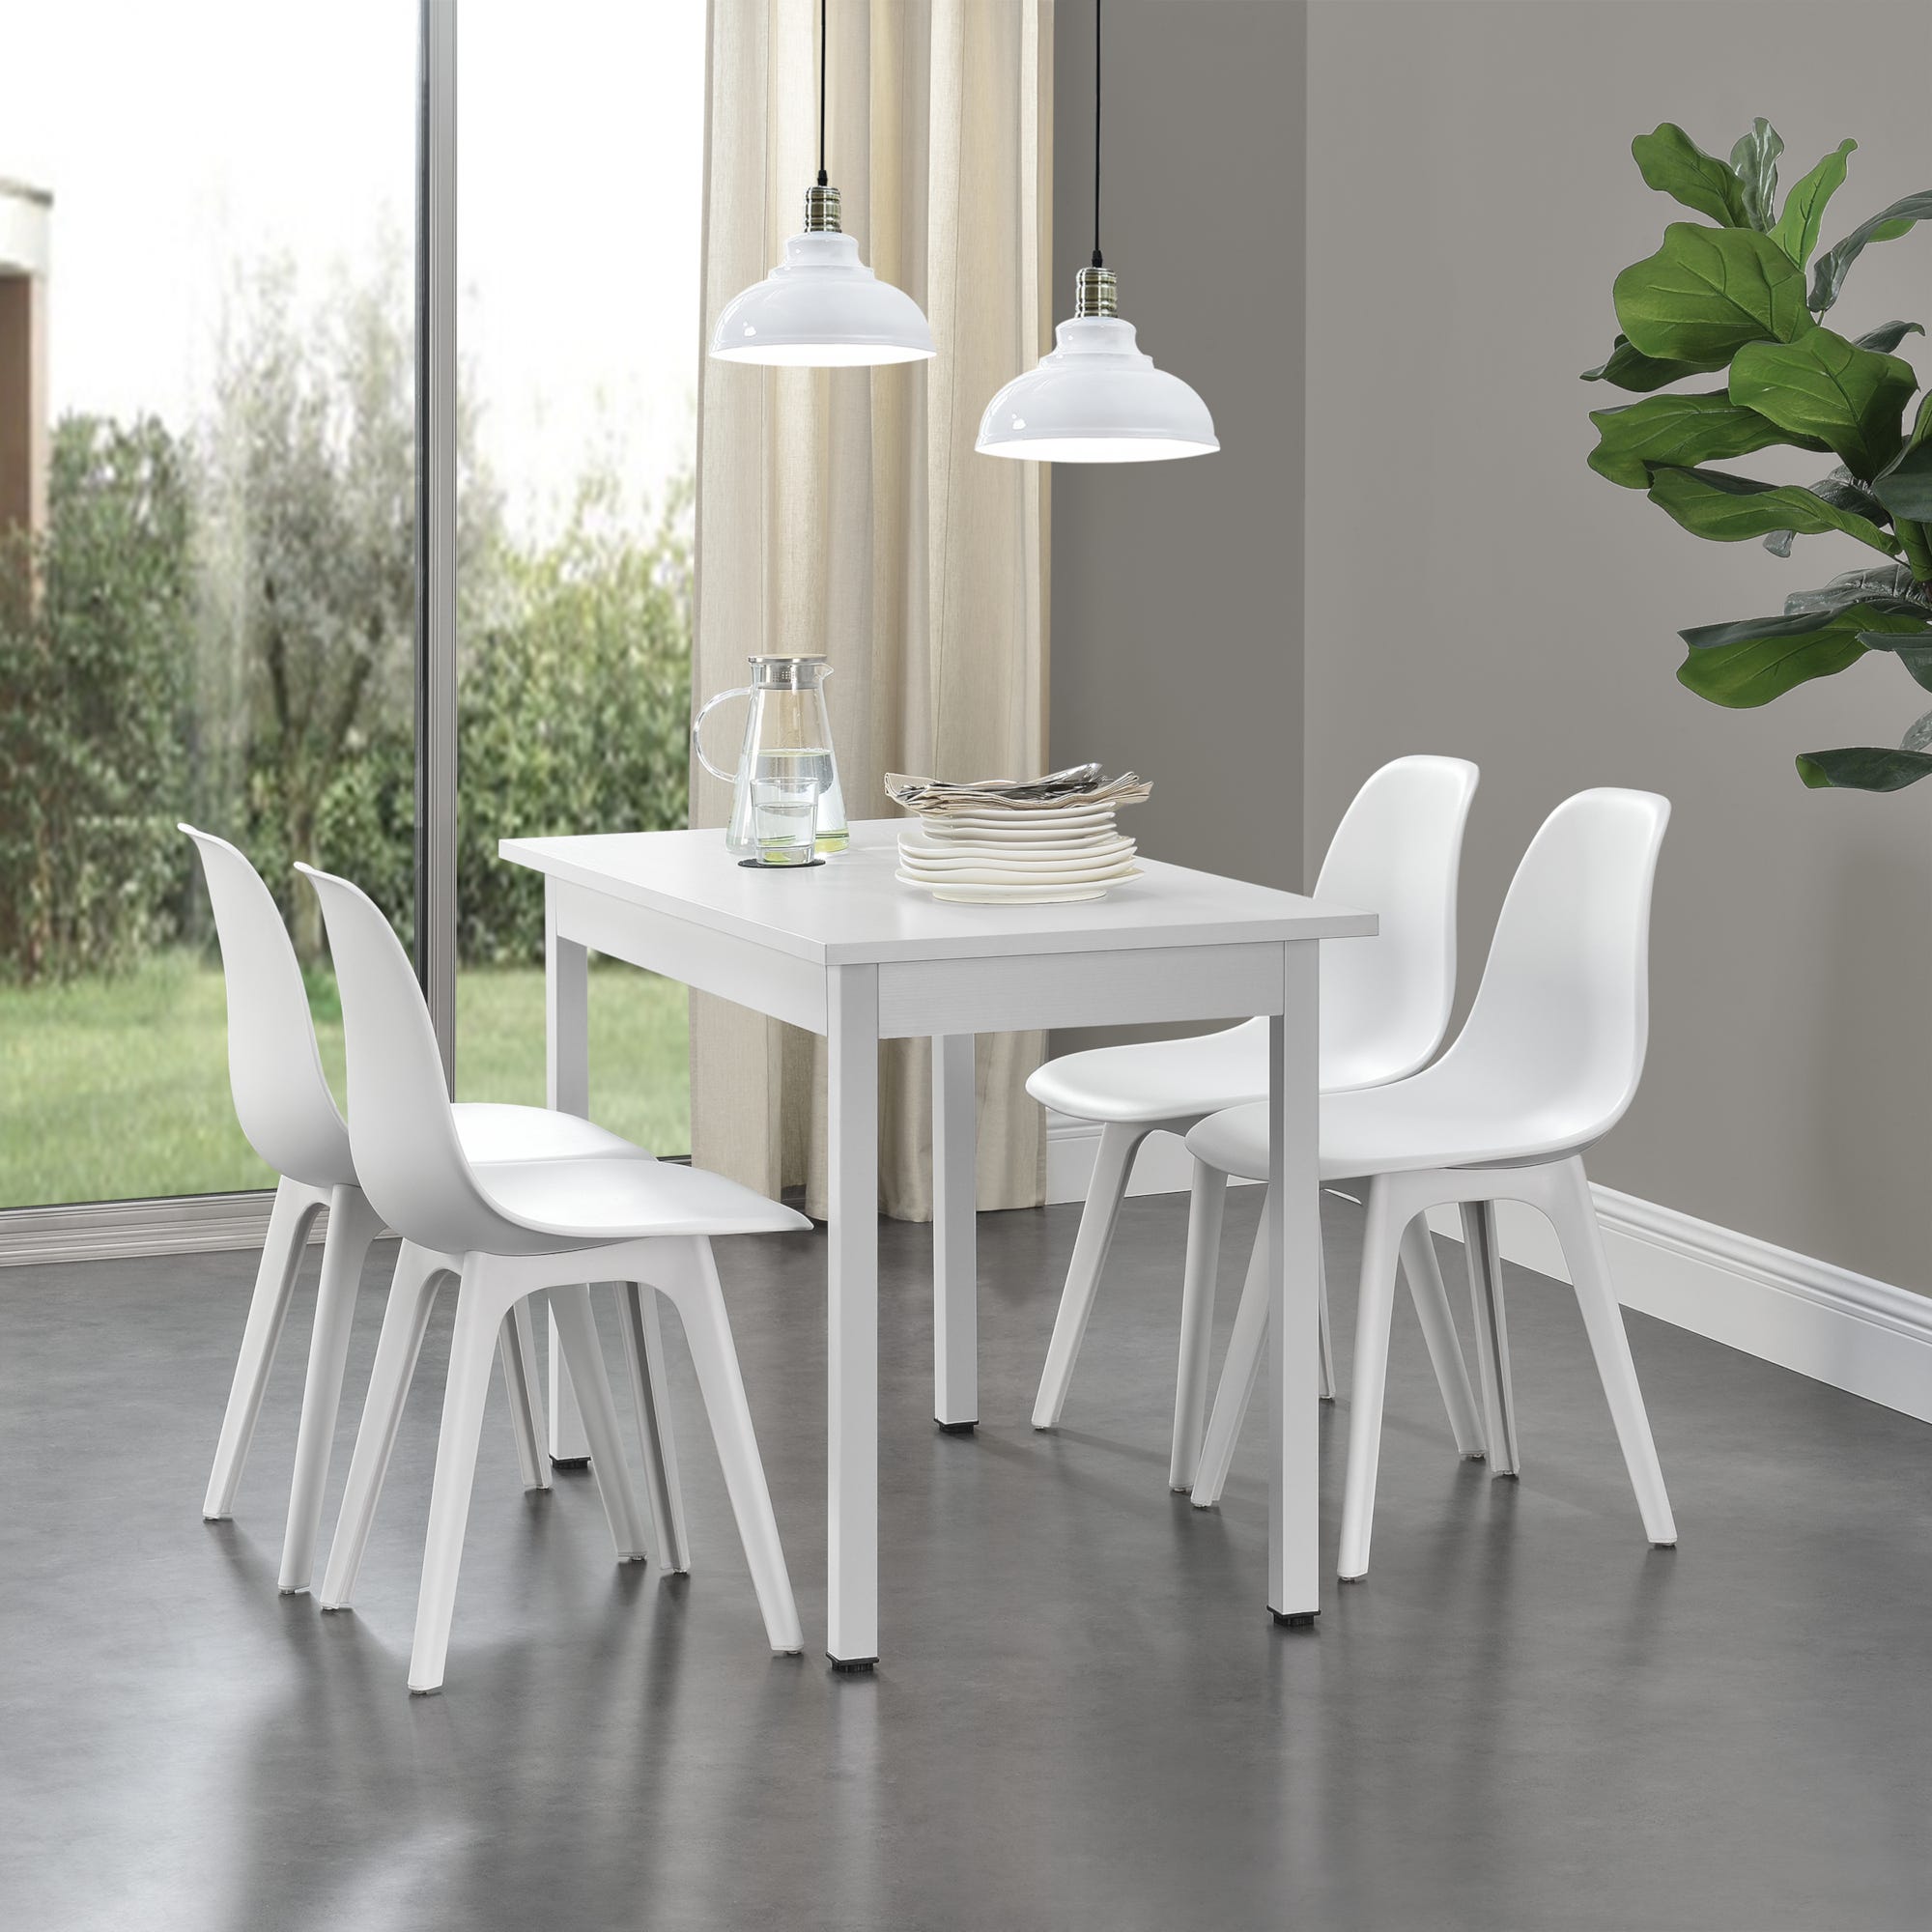 Maeve Light Set tavolo cucina 80x80cm industriale 4 sedie design